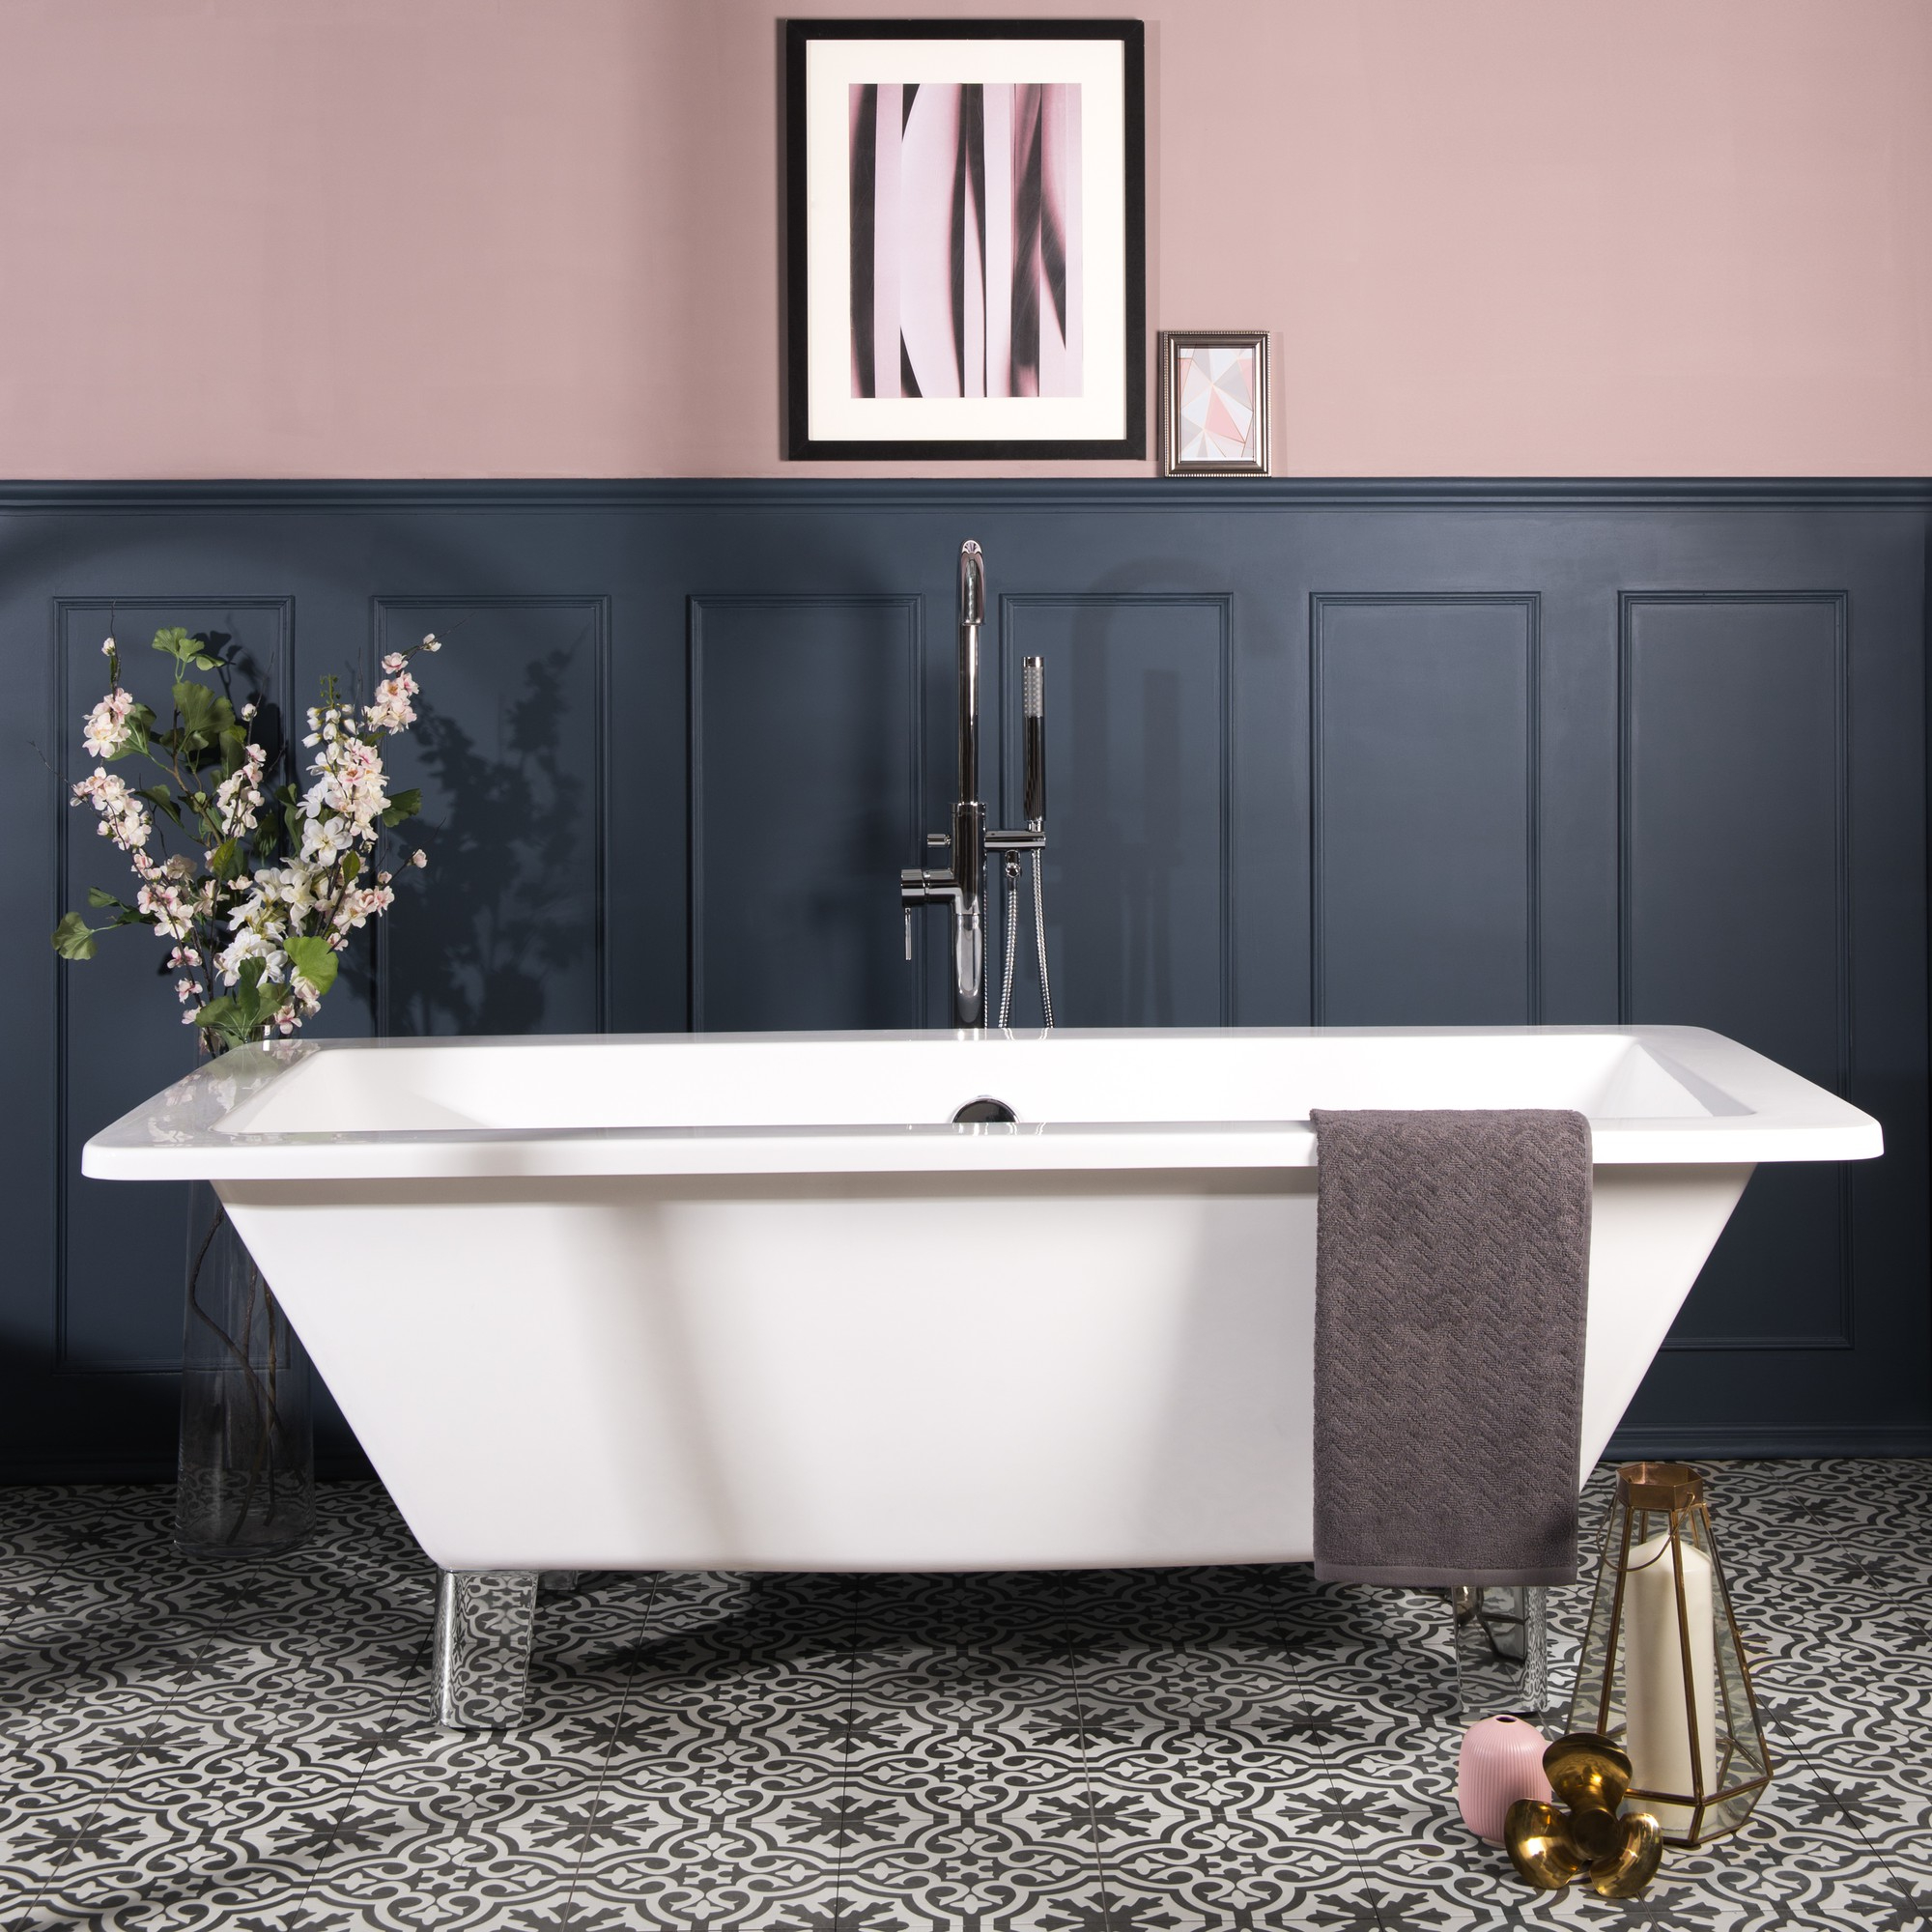 L'Agence BLEU, salle de bain élégante et colorée. La pièce est dominée par une baignoire îlot blanche positionnée au centre sur un sol en carreaux de céramique aux motifs géométriques en teintes de rose pastel et bleu foncé. Les murs sont peints d'un bleu profond qui crée un contraste audacieux avec le rose du sol. Une petite table d'appoint blanche est placée à côté de la baignoire, idéale pour poser des objets de bain. La pièce est éclairée par une lumière douce et indirecte, renforçant l'atmosphère relaxante de la salle de bain. Le design général est à la fois moderne et féminin, avec une touche vintage apportée par le sol à motifs.